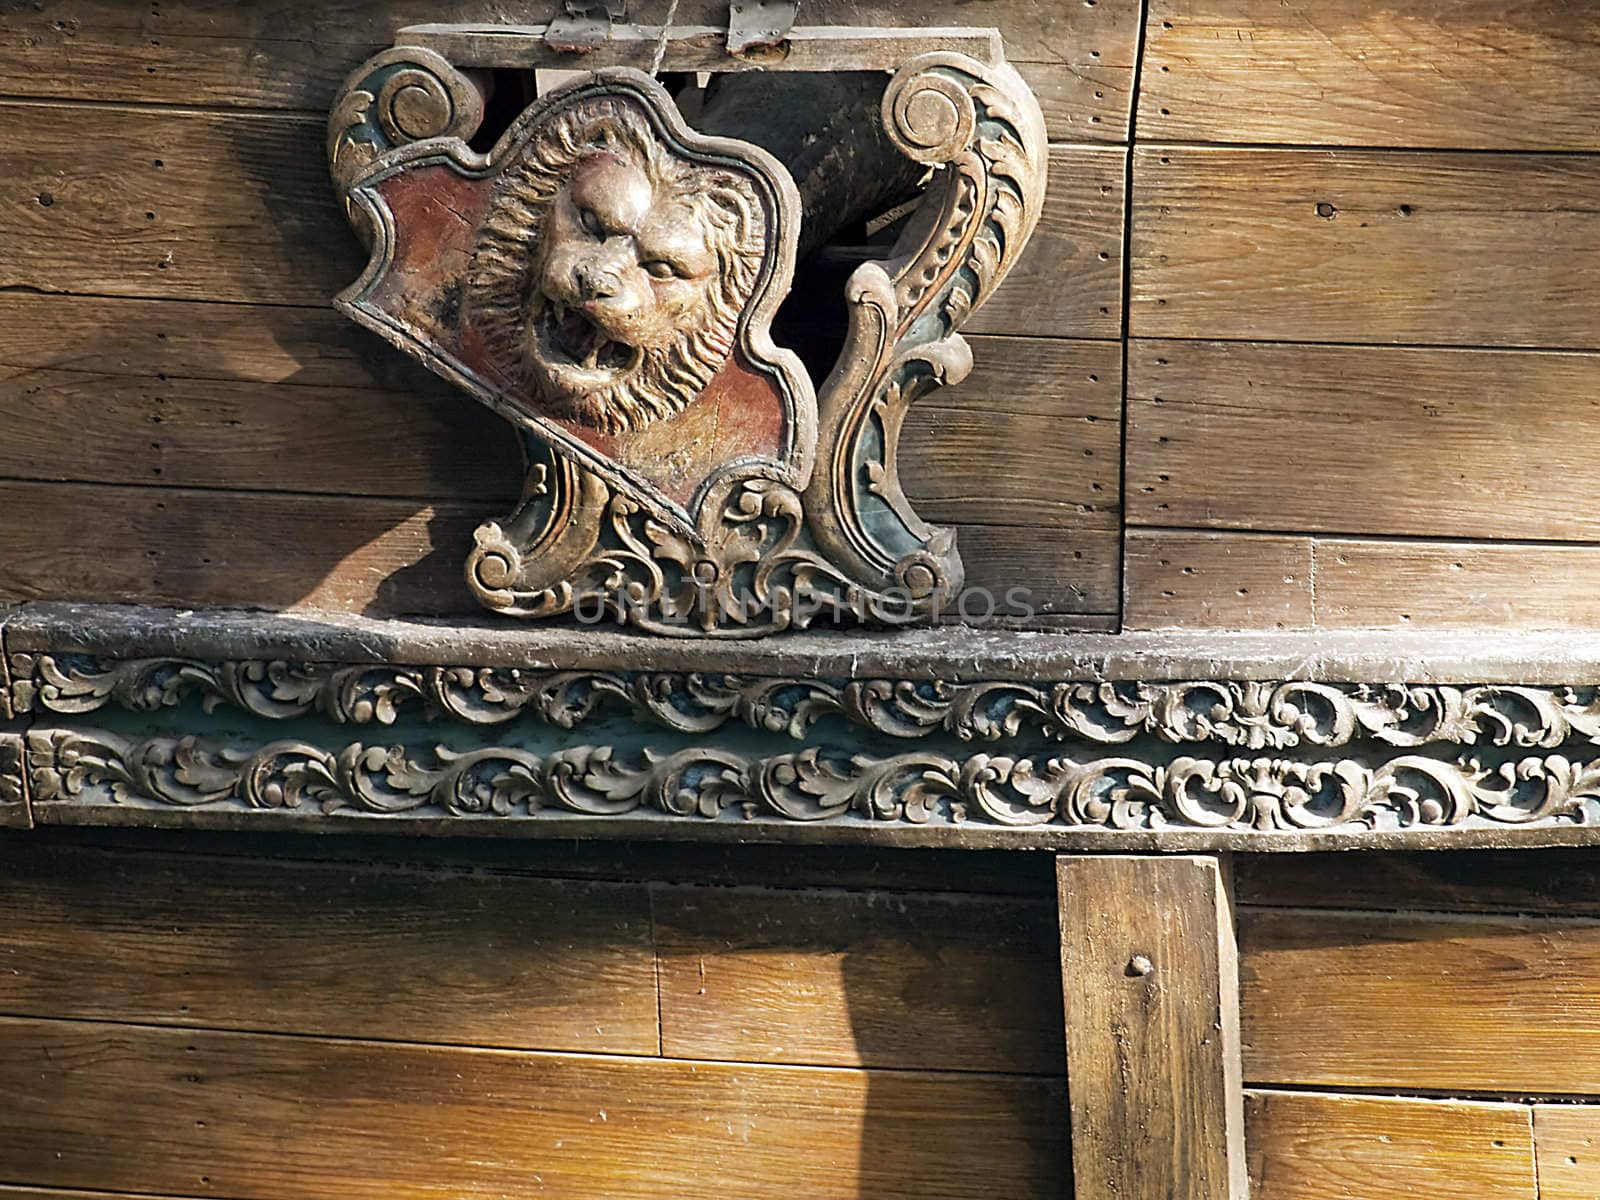 Broken lion head door for a conon on a replica of the Santa Maria.